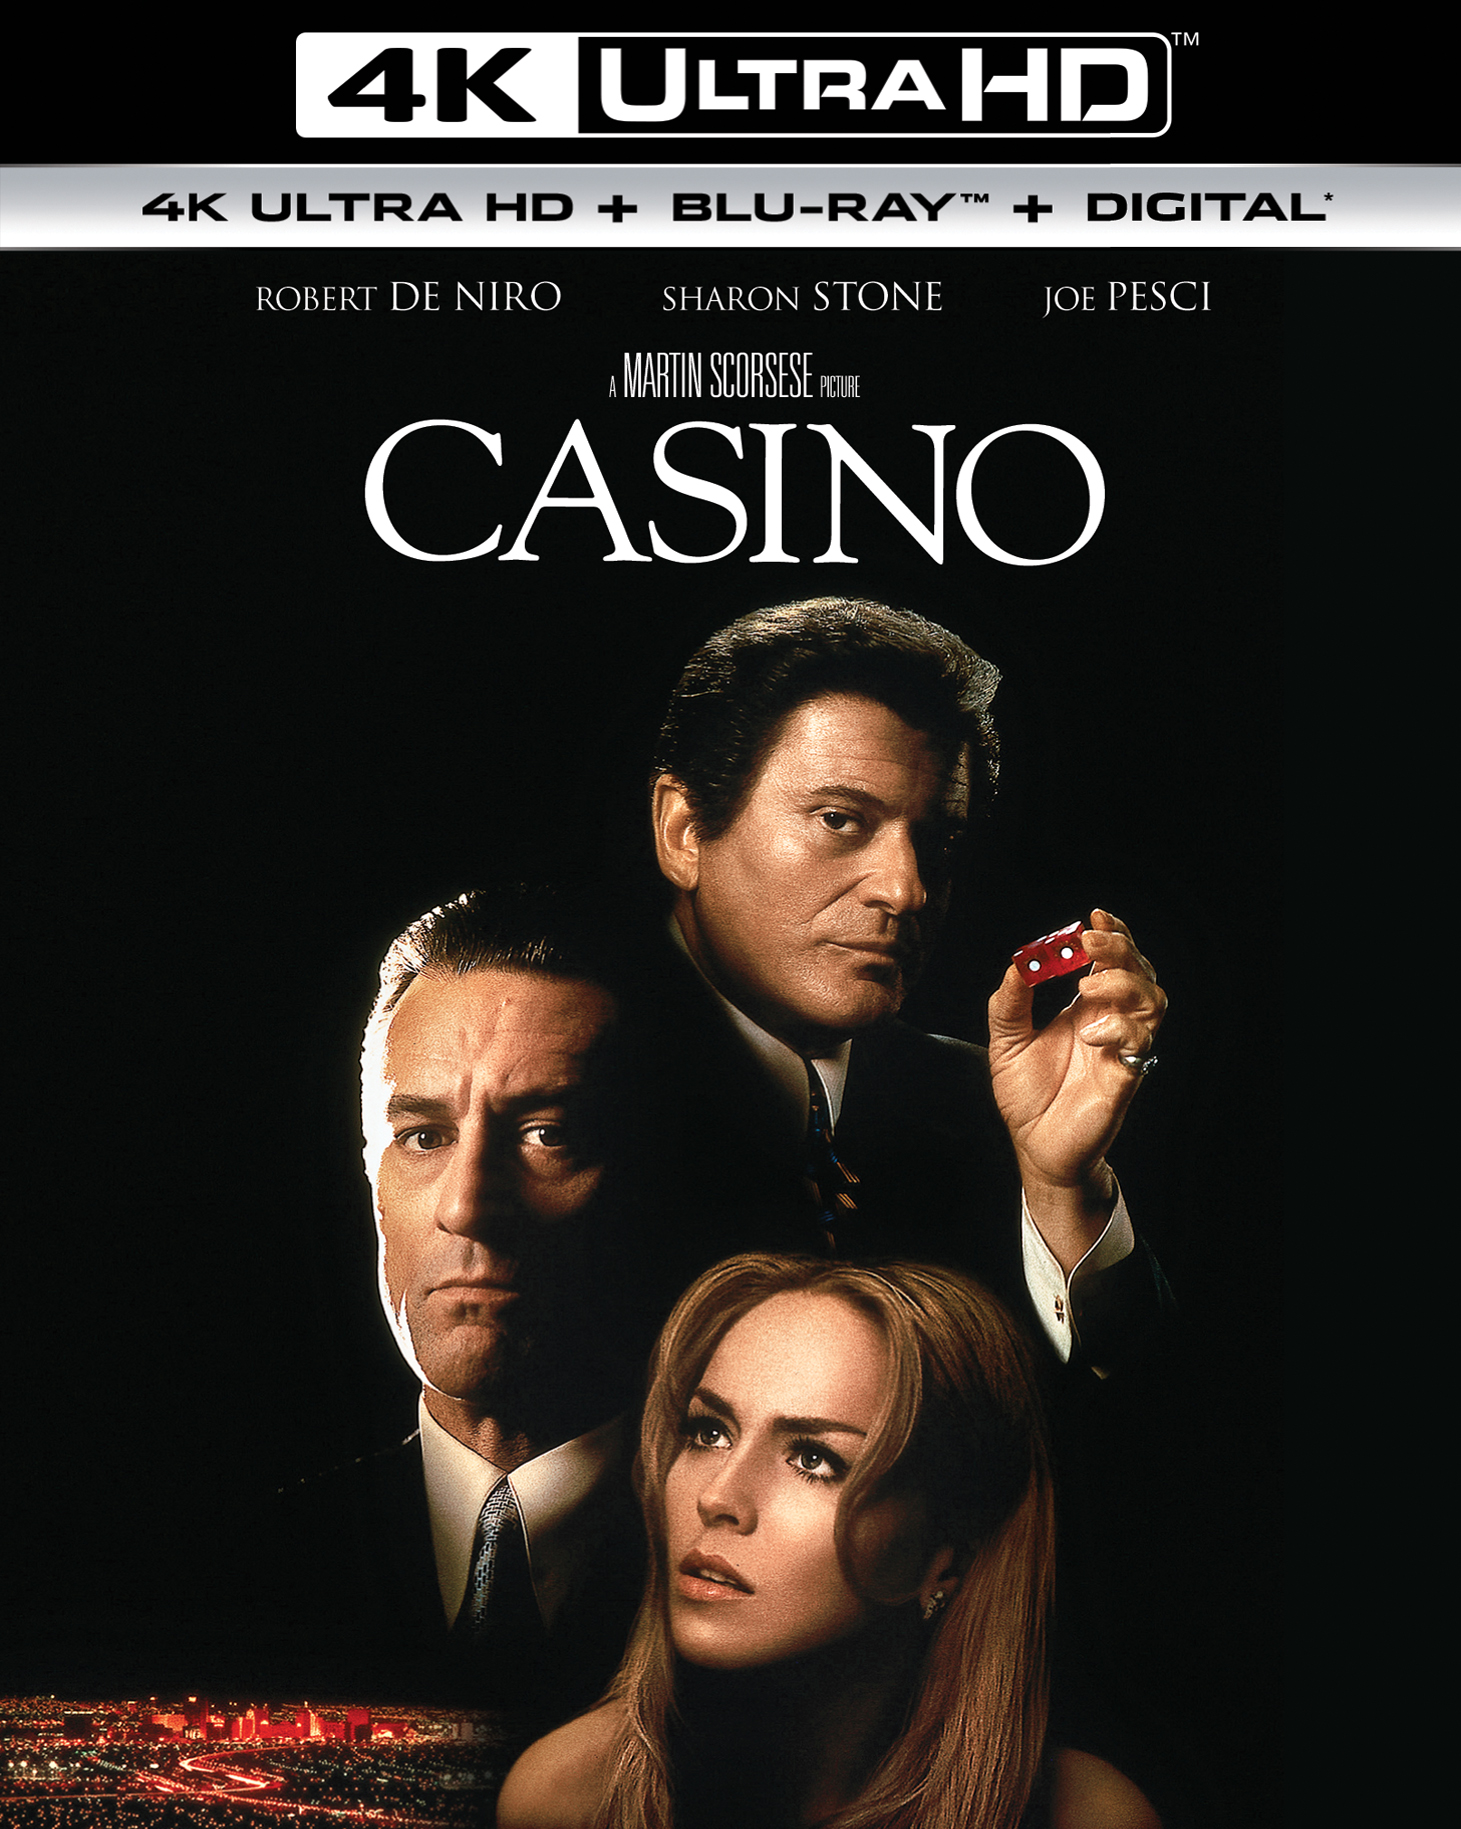 Casino 1995